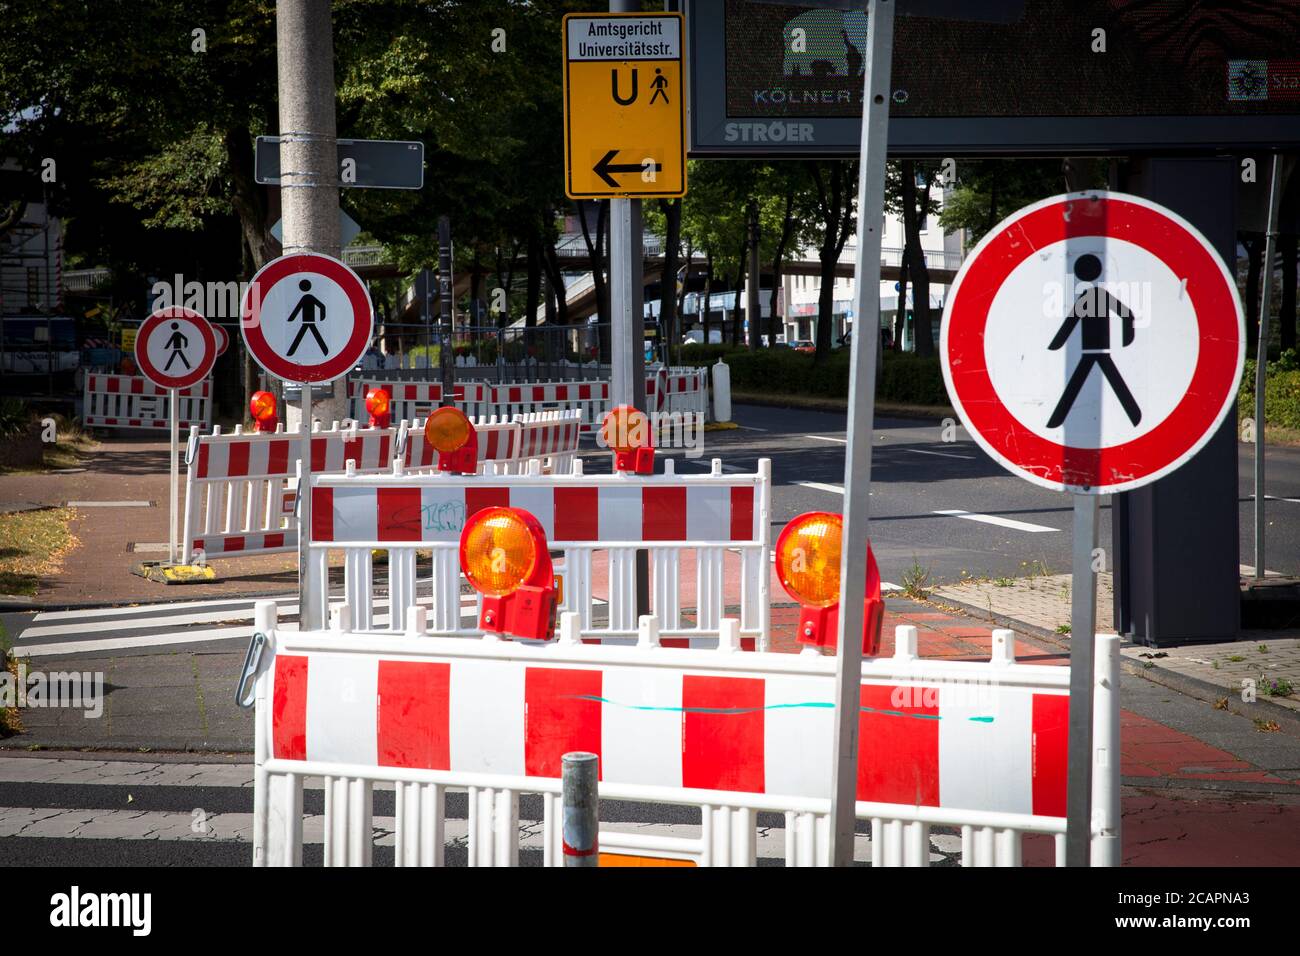 Blockierter Fußgängerüberweg, Barrieren und Verbotsschilder für Fußgänger auf einer Baustelle an der Luxemburger Straße, Köln, Deutschland. Abgeschotter Zebras Stockfoto